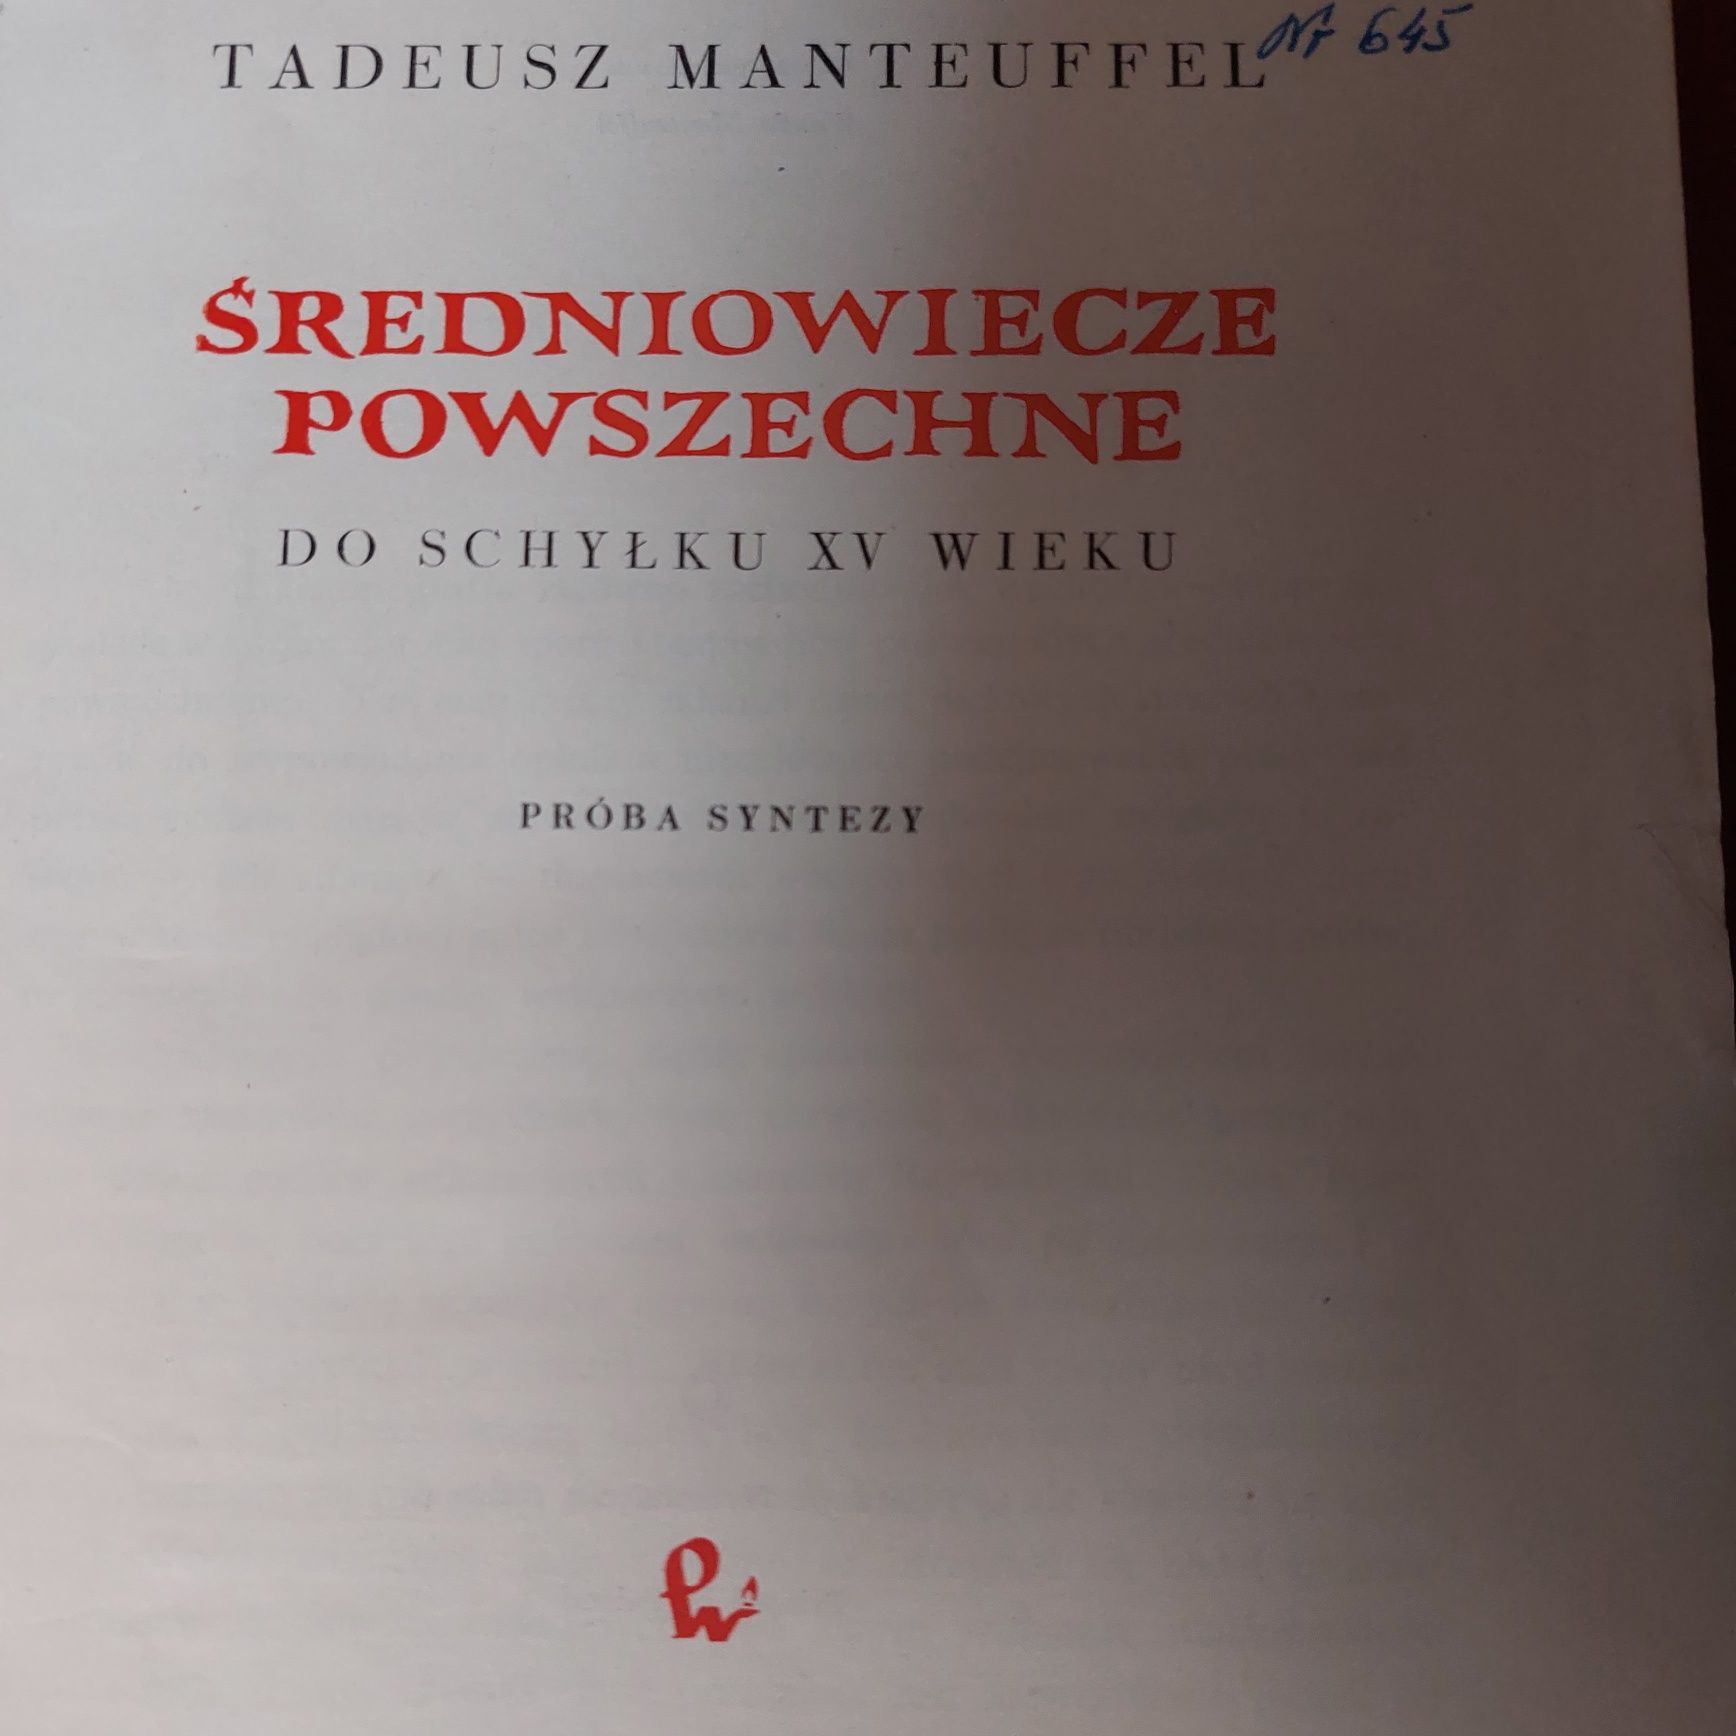 Tadeusz Manteuffel Średniowiecze powszechne 1958